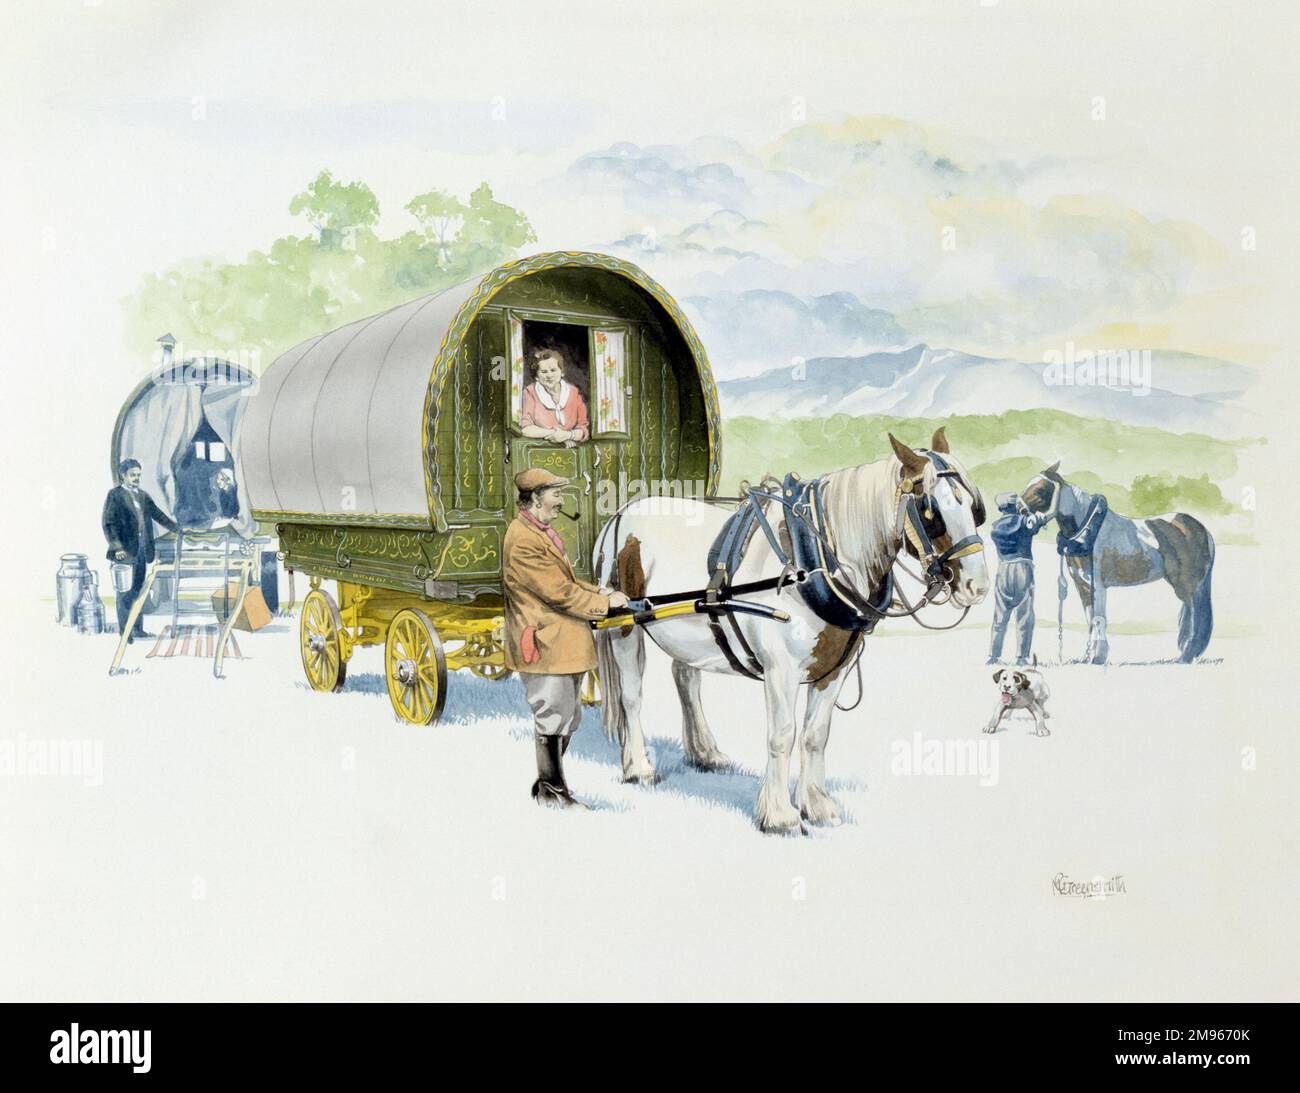 Eine Gruppe von Reisenden und ihre Pferdekarawanen/Wagen. Malerei von Malcolm Greensmith Stockfoto